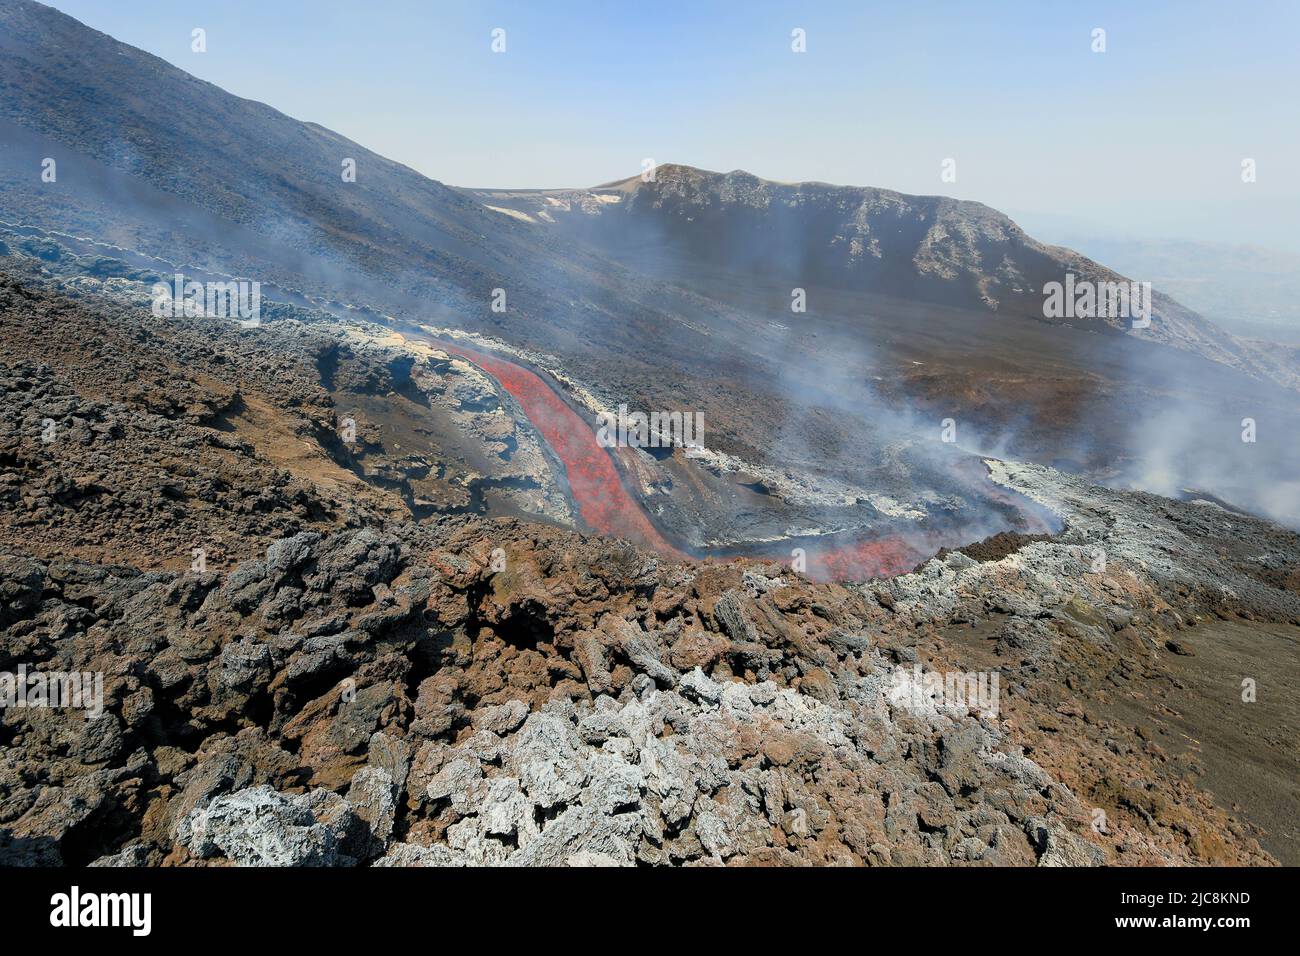 Chute de lave à l'Etna qui coule sur le volcan de la Sicile dans la Valle del Bove avec de la fumée et un canal d'écoulement de lave Banque D'Images